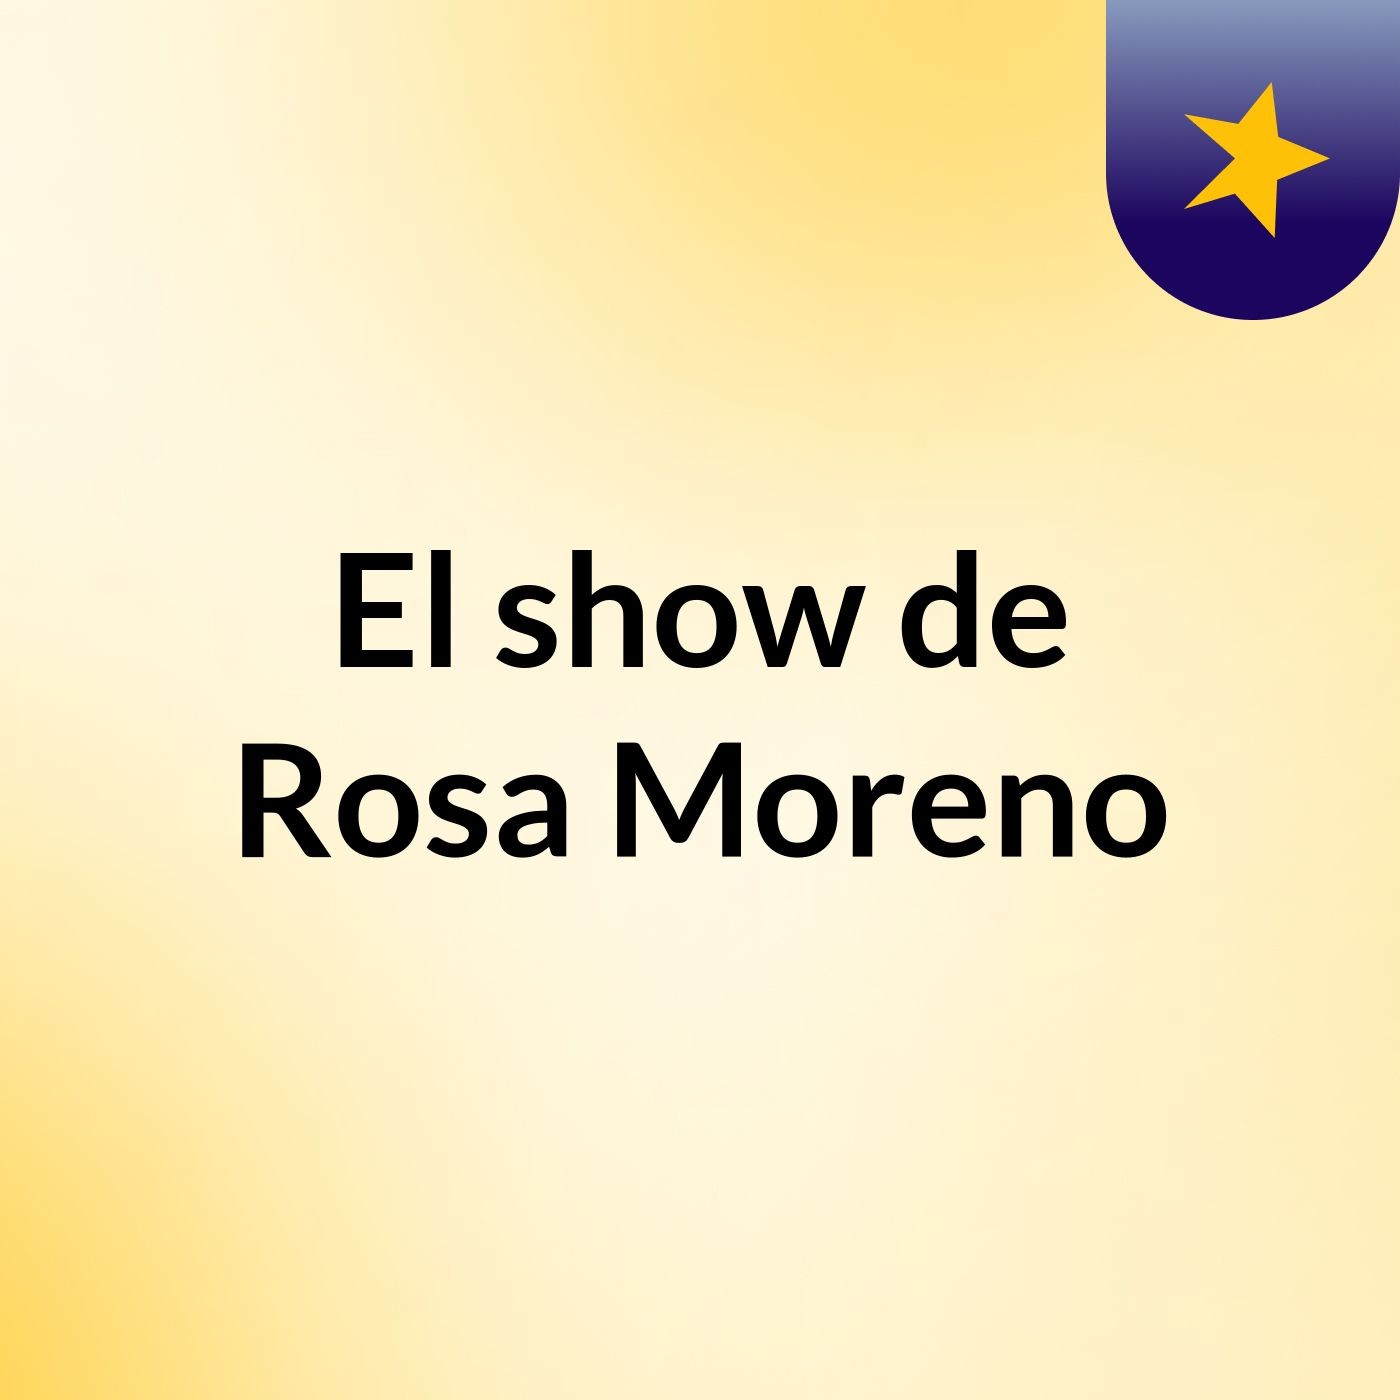 Episodio 6 - El show de Rosa Moreno